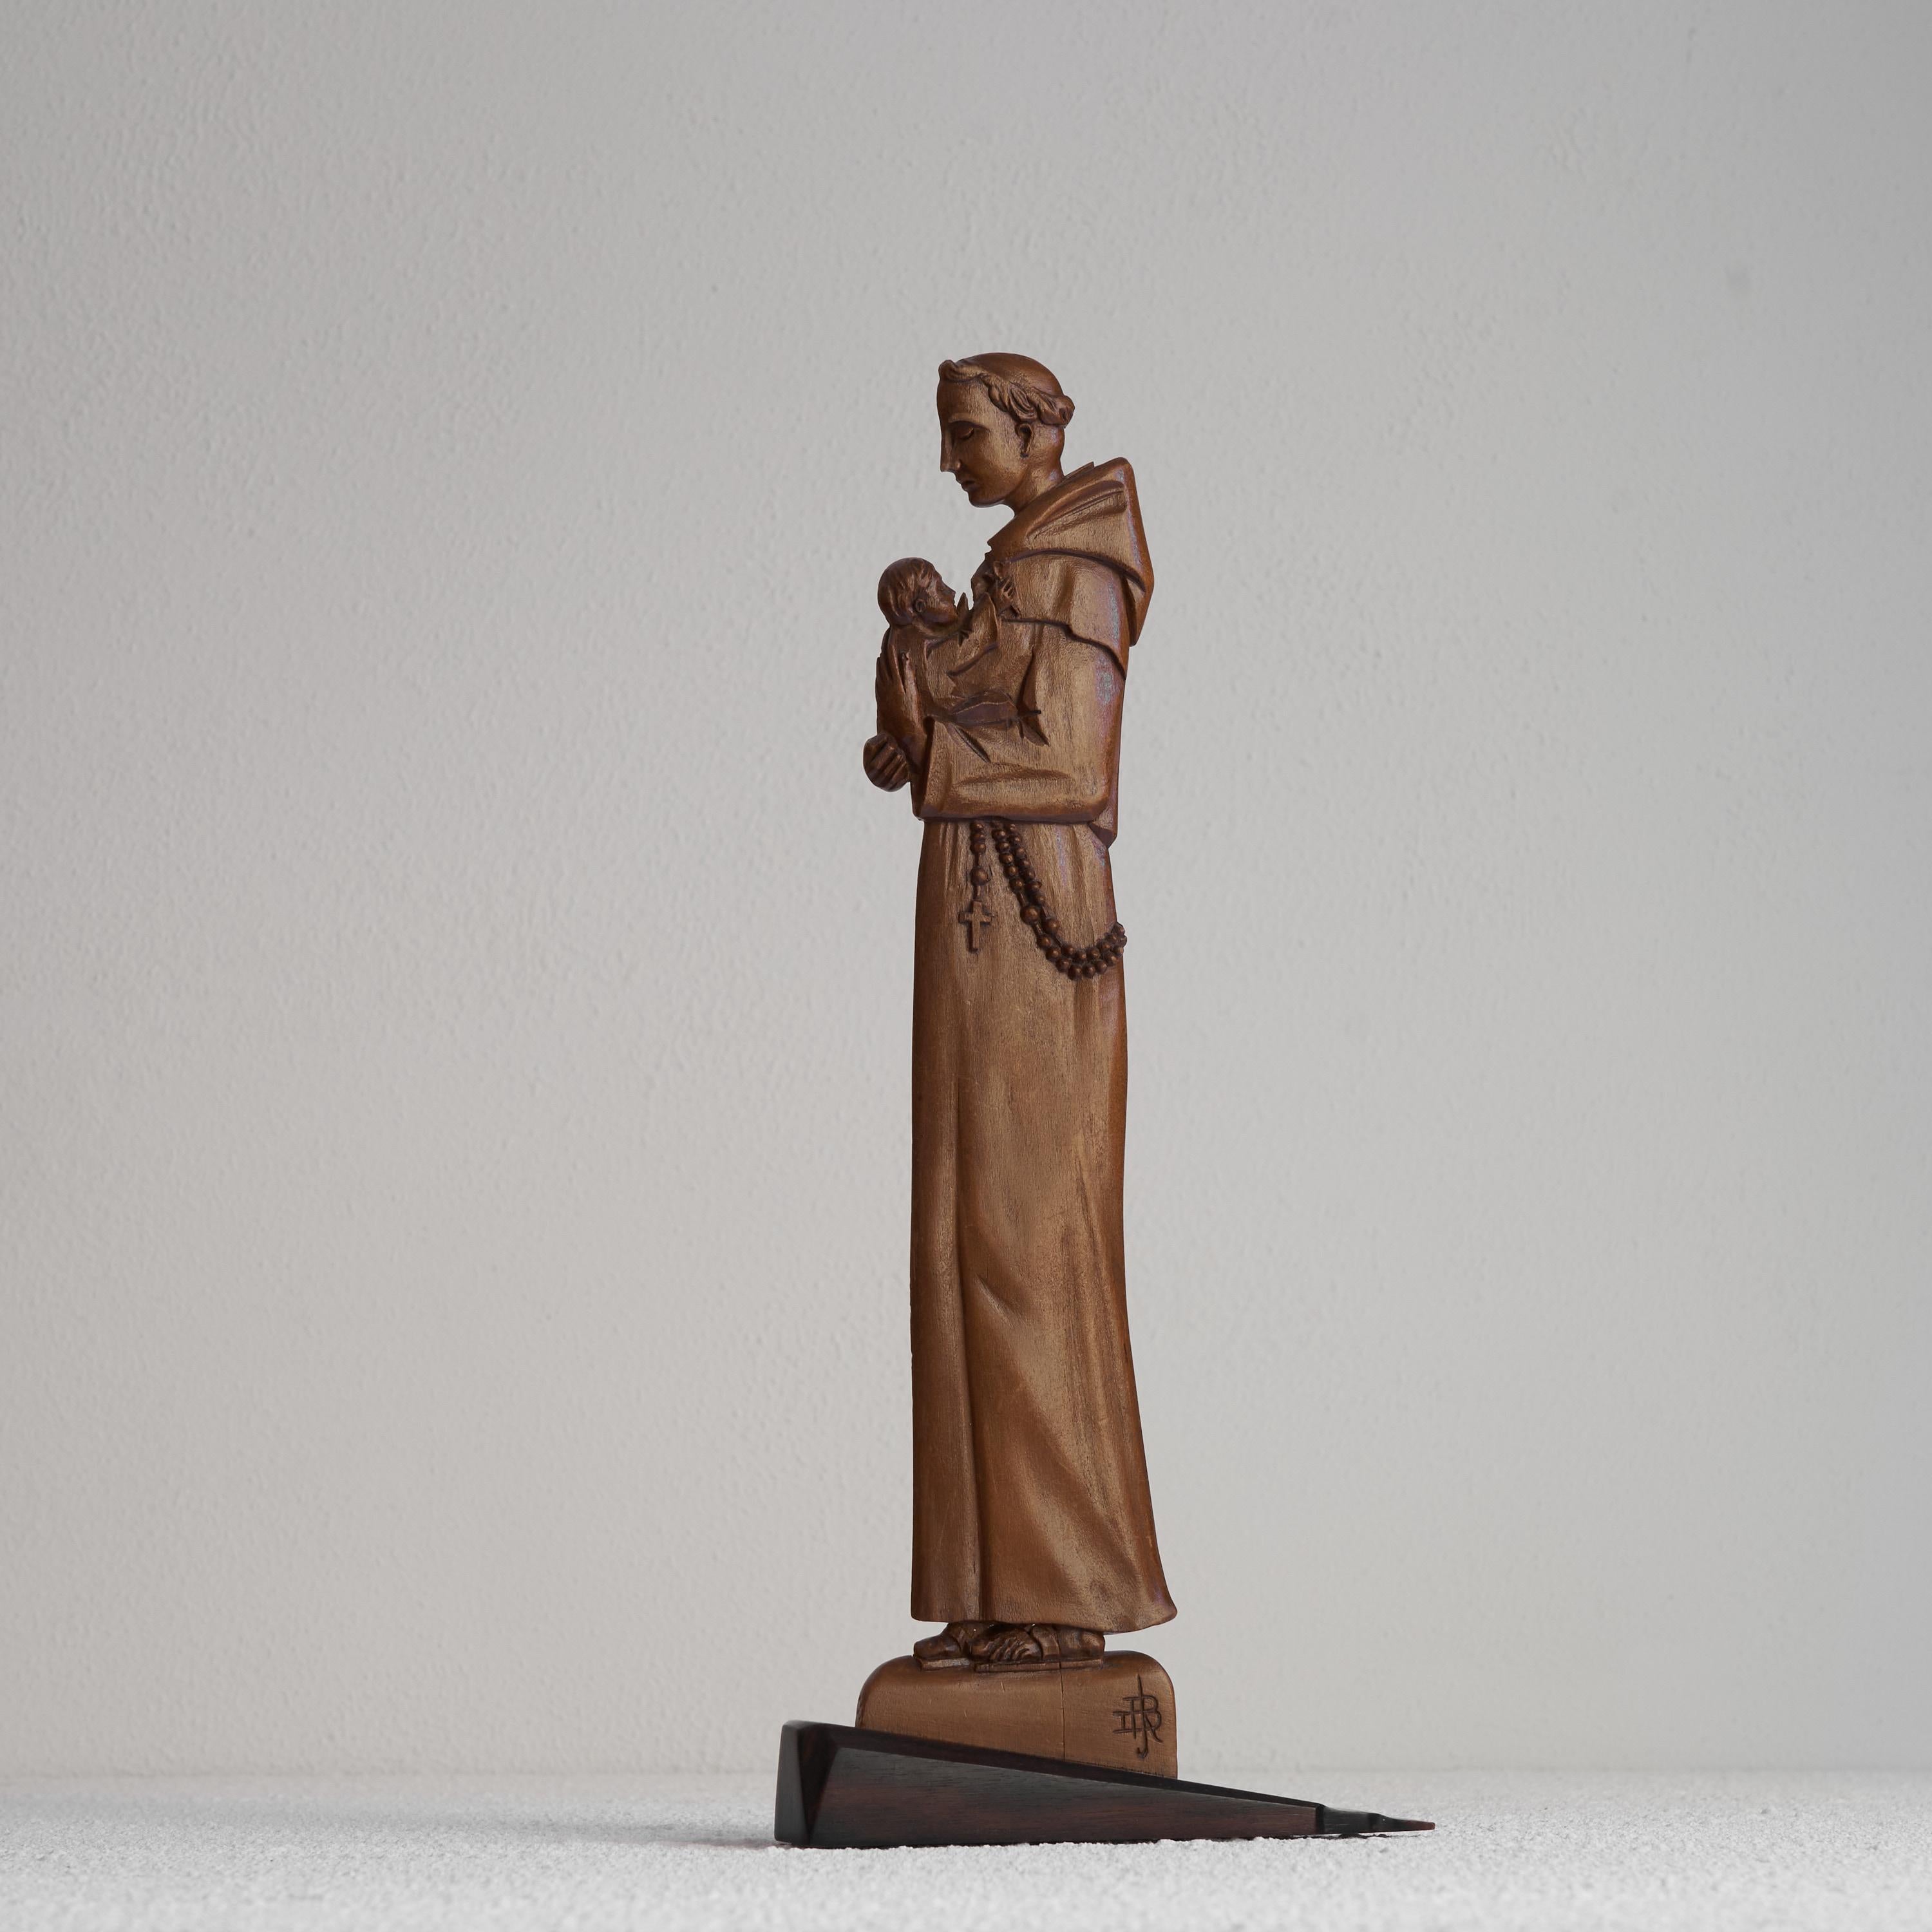 Unverwechselbare handgeschnitzte Art Deco Skulptur eines religiösen Mannes mit Kind. Anfang des 20. Jahrhunderts.

Unverwechselbare und kunstvoll handgeschnitzte Art-Deco-Holzskulptur eines religiösen Mannes mit Kind. Sehr art deco mit scharfen